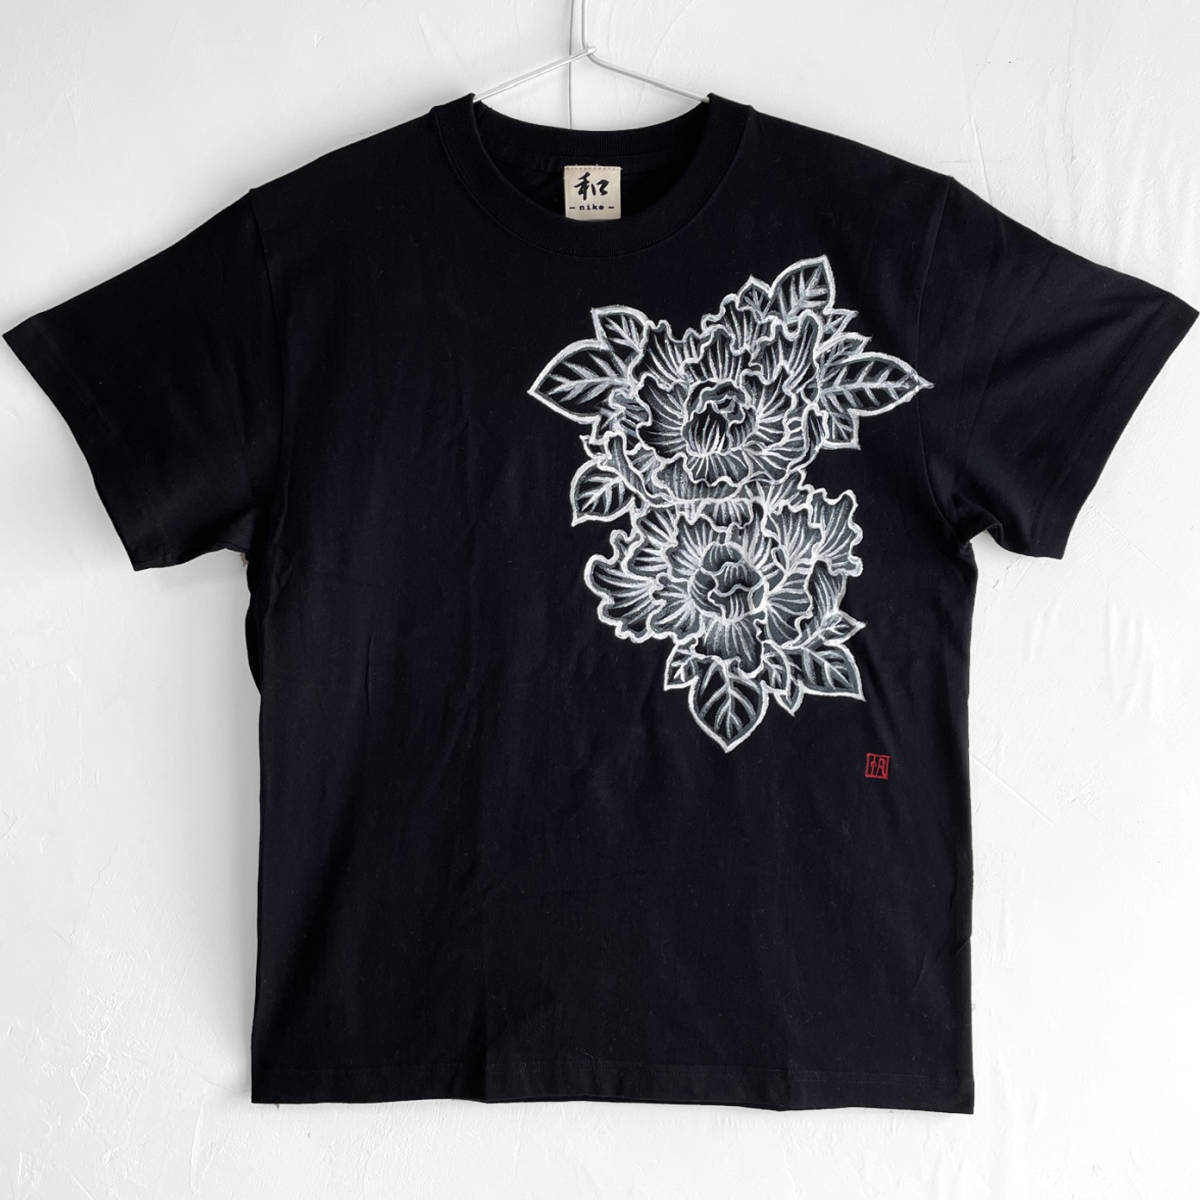 Мужская футболка, размер L, футболка с рисунком пиона и ручной росписью, черный, футболка с цветочным узором пиона и ручной росписью, Японский узор, Большой размер, Круглый вырез, с рисунком